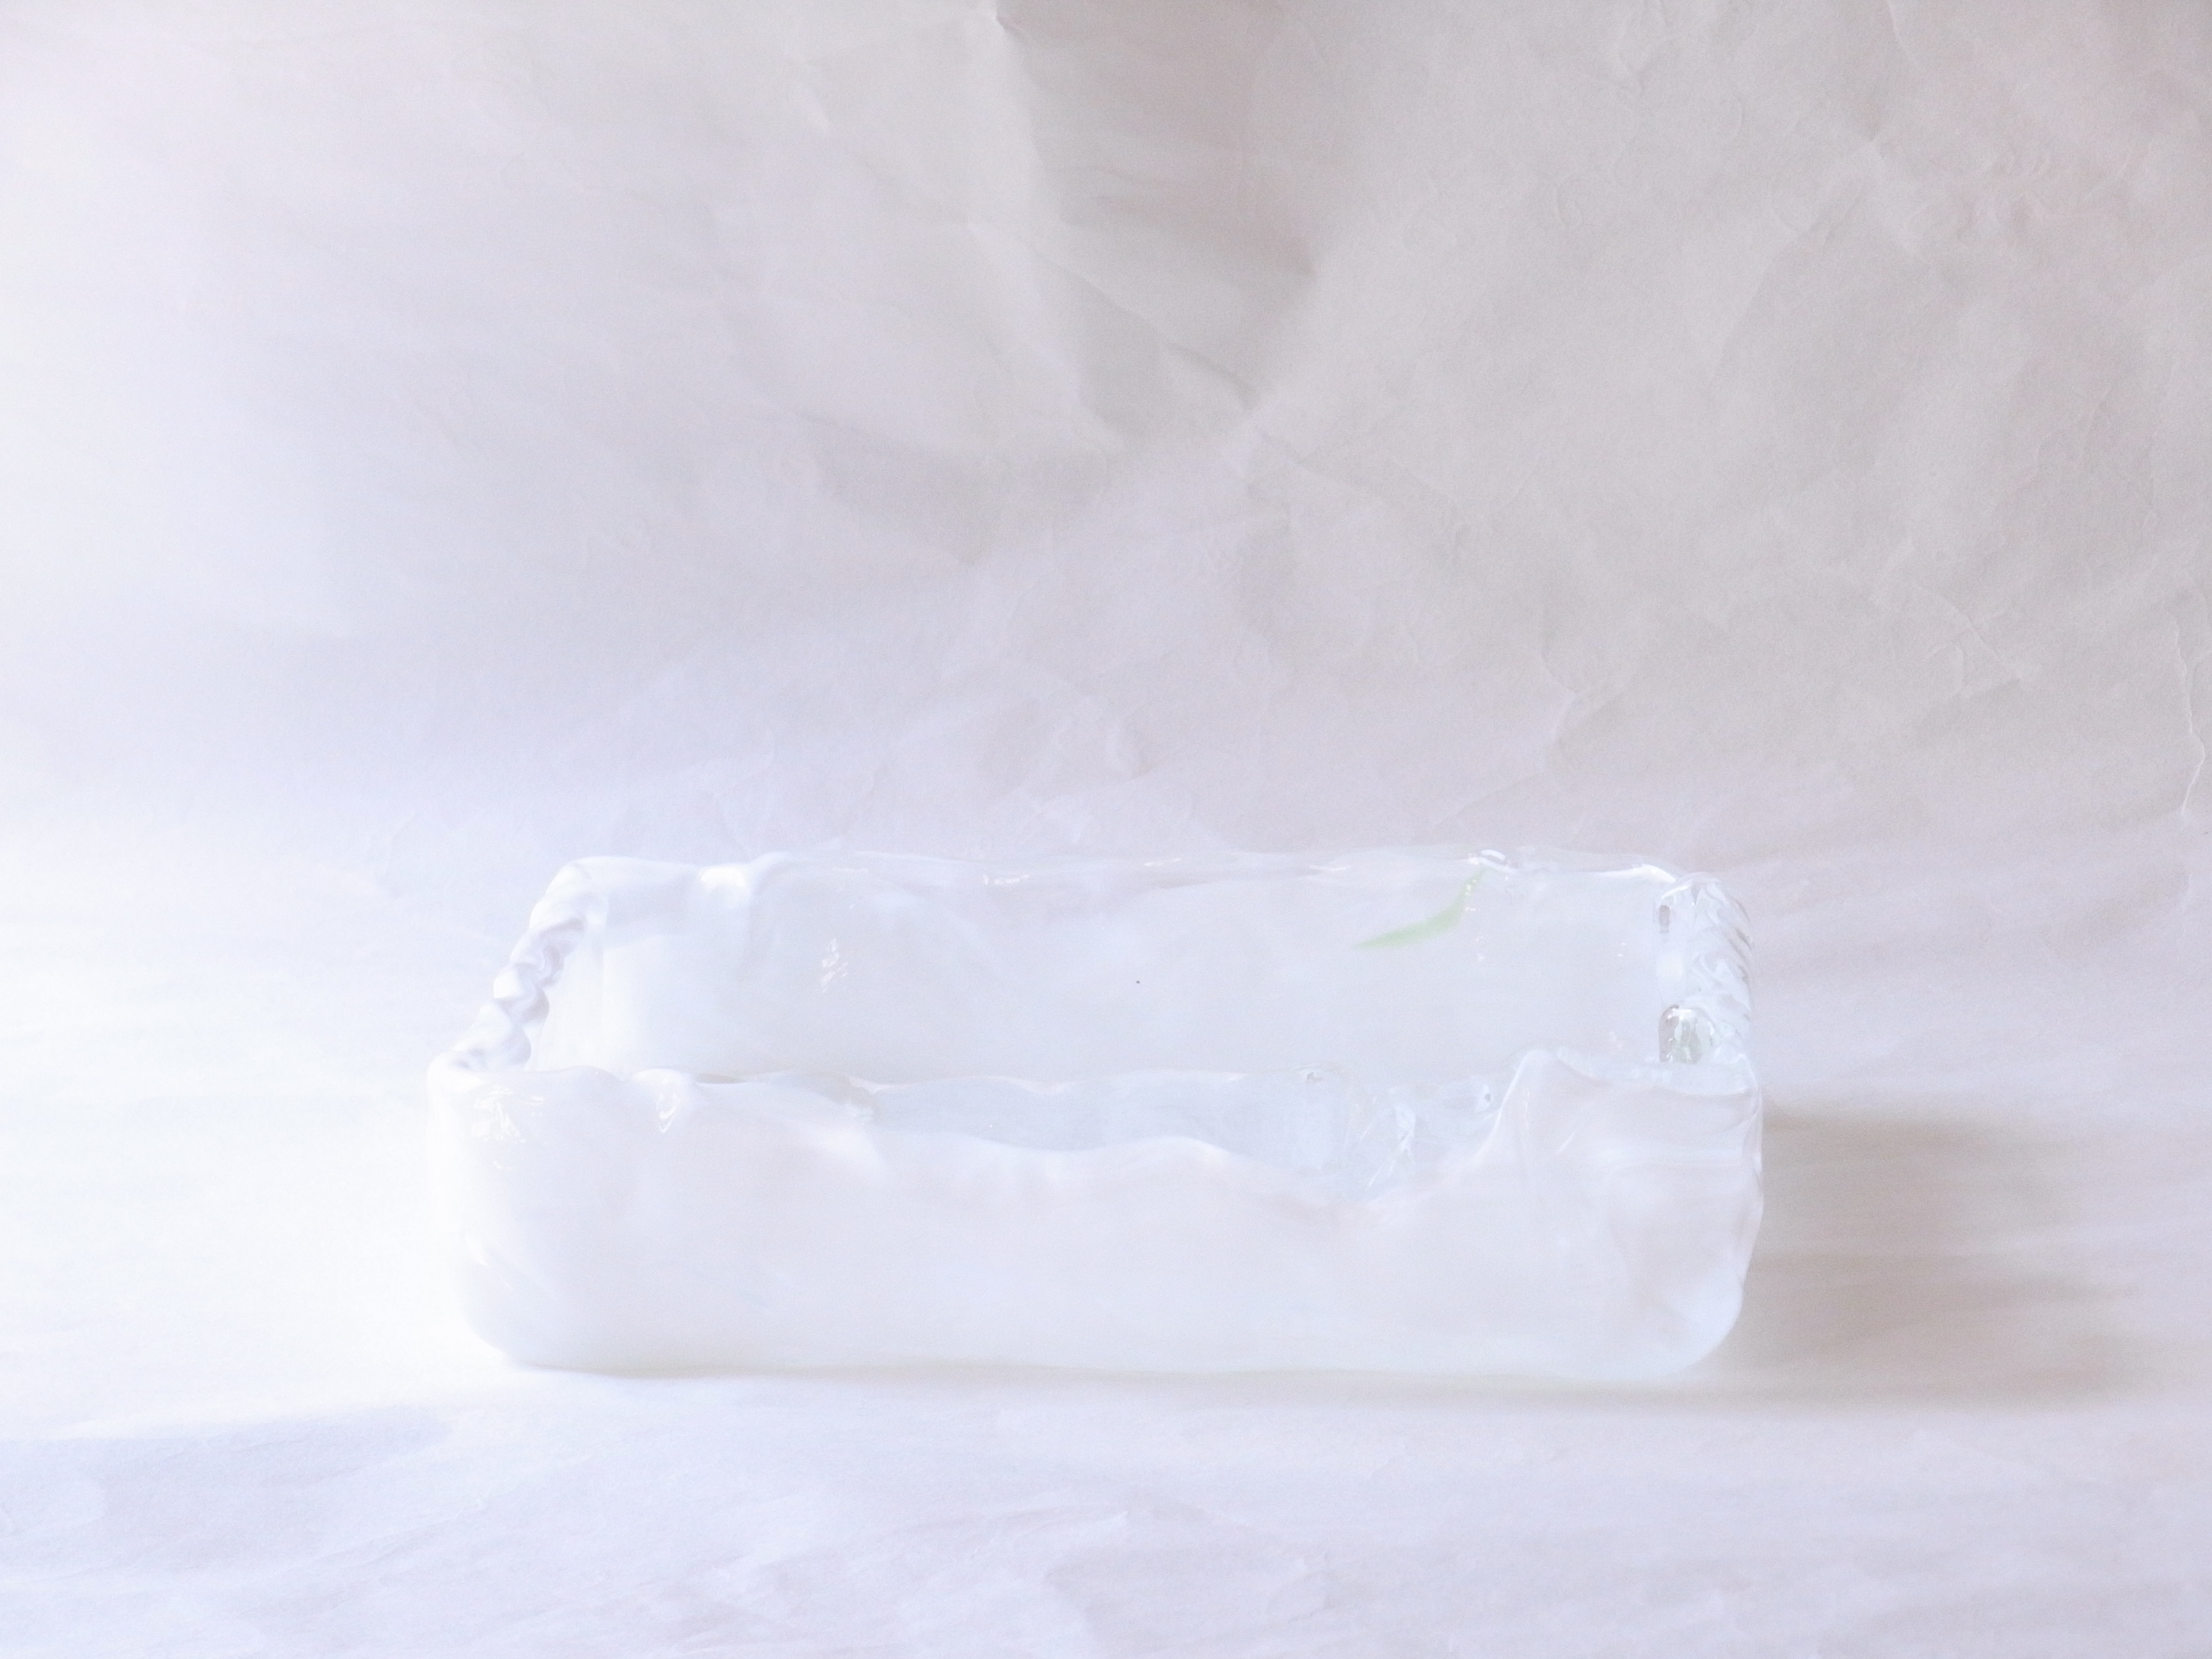 ガラス製品　日本製　手づくり　ガラス花器　スクエア　白　熱いうちに　曲げて成形　四角い　水盤のような　基本的な生け方　透明なガラス　白色が流れるように　漂っている風合い　透明な部分　白い筋状　斑紋　細かい　意図的でない　自然なガラスの流れ　花器のデザイン　模様　高度な技術　デコボコ　手づくり感　白が基調　どんな花にも合わせやすい　引き立つ　花器の形　最もよく使う　基本のもの　どなたでも生けられる　汎用性が高い　日本製　陶器　磁器　陶磁器　漆器　茶道具　華道具　贈り物　ギフト　記念品　引出物　法要　お返し　専門店　リアル店舗　茶の湯　茶道　裏千家　表千家　茶会　月釜　抹茶　高品質　安らぎ　いやし　よりおいしく　安心　機能的　長持ち　人気　おすすめ　高機能　ネット通販　ネットショップ　セレクトショップ　欲しい　購入　買う　買い物　岐阜県　岐阜市　美殿町　小林漆陶　特別な　選び抜かれた　品質重視　使いやすい　格安　老舗　誕生日　結婚　出産　入学　退職　母の日　父の日　敬老の日　クリスマス　プレゼント　叙勲　長寿　新築　お祝い　御礼　内祝い　外国土産　海外みやげ　実店舗　創業１００年以上　使うと分かる　職人技 日本一の品揃え　日本一の在庫数　専門店　専門知識　数万点の在庫　百貨店（高島屋　三越　伊勢丹　松坂屋　大丸）にない　手作り　お洒落　高級品　希少価値　上質な器 伝統工芸品　コスパ　お値打ち　お買い得　堅牢　飽きない　永く使える　お気に入り　国産　料理が映える　満足感　豊かな食生活　豊かな食文化　こだわりの器　日本文化　他にない　ここにしかない　オリジナル　独自の　個性的　ここでしか買えない　超レアもの　一品もの　現品限り　入手困難　いい器　匠の技　美しい　実用的　外人が喜ぶ店　外人が珍しがる店　外人がうれしい店　日本各地の一級品を売る店　日本全国の器を売る店　本当にいいもの コスパ高い　一流品　修理　選りすぐりの逸品　周年記念　永年勤続表彰　退職記念　卒業記念　日本土産　岐阜土産　岐阜のおみやげ　岐阜の特産品　料理を引き立てる器　高級店　一流店　岐阜で一番　東海で一番　中部で一番　日本で一番　おしゃれな店　地域一番店　実店舗　陶磁器　磁器　華道具　ガラス器　明治４２年創業　有田焼　清水焼　美濃焼　赤津焼　万古焼　常滑焼　九谷焼　唐津焼　萩焼　信楽焼　万古焼　砥部焼　備前焼　丹波焼　山中塗　春慶塗　讃岐塗　越前塗　輪島塗　紀州塗　会津塗　小田原木工　桜皮細工　秋田杉　駿河竹細工　七宝焼　南部鉄器　錫製品　江戸切子　津軽びいどろ